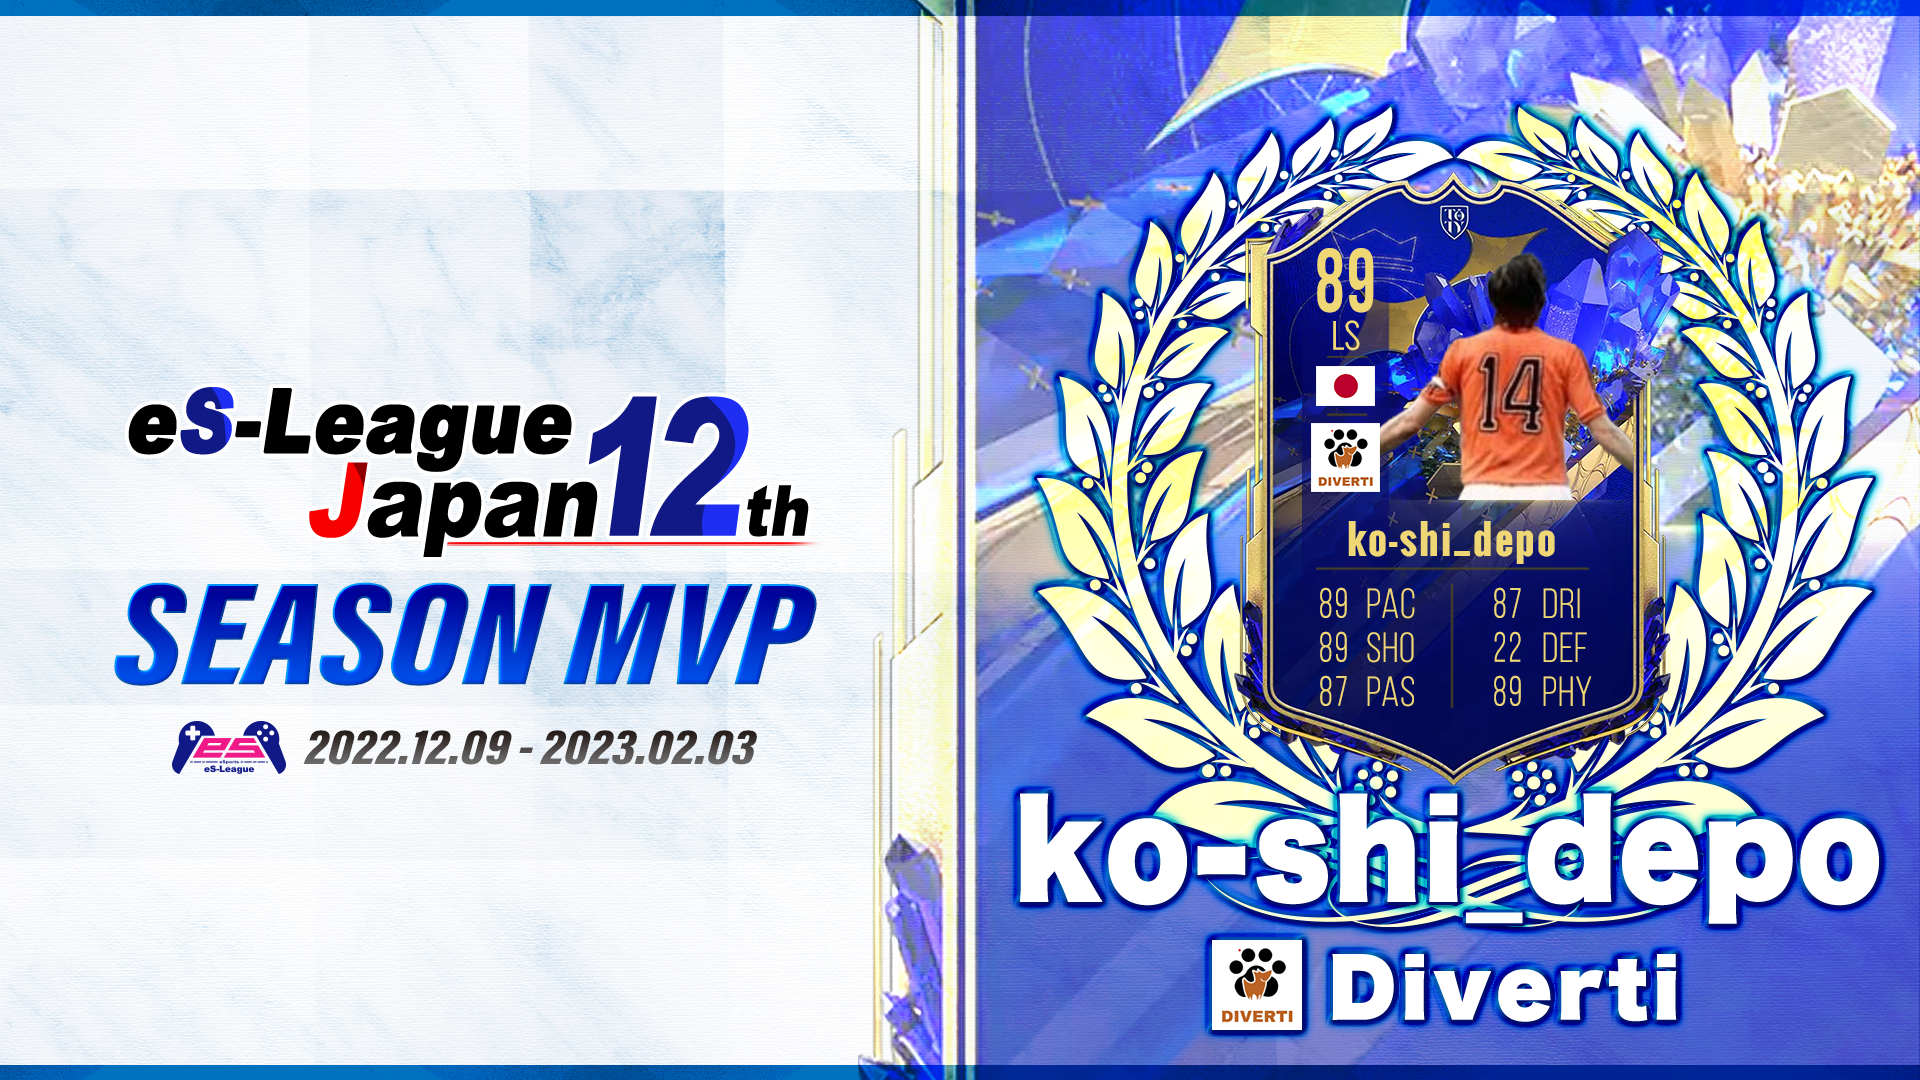 【MVP】FIFA23 eS-League JAPAN 12th 2部